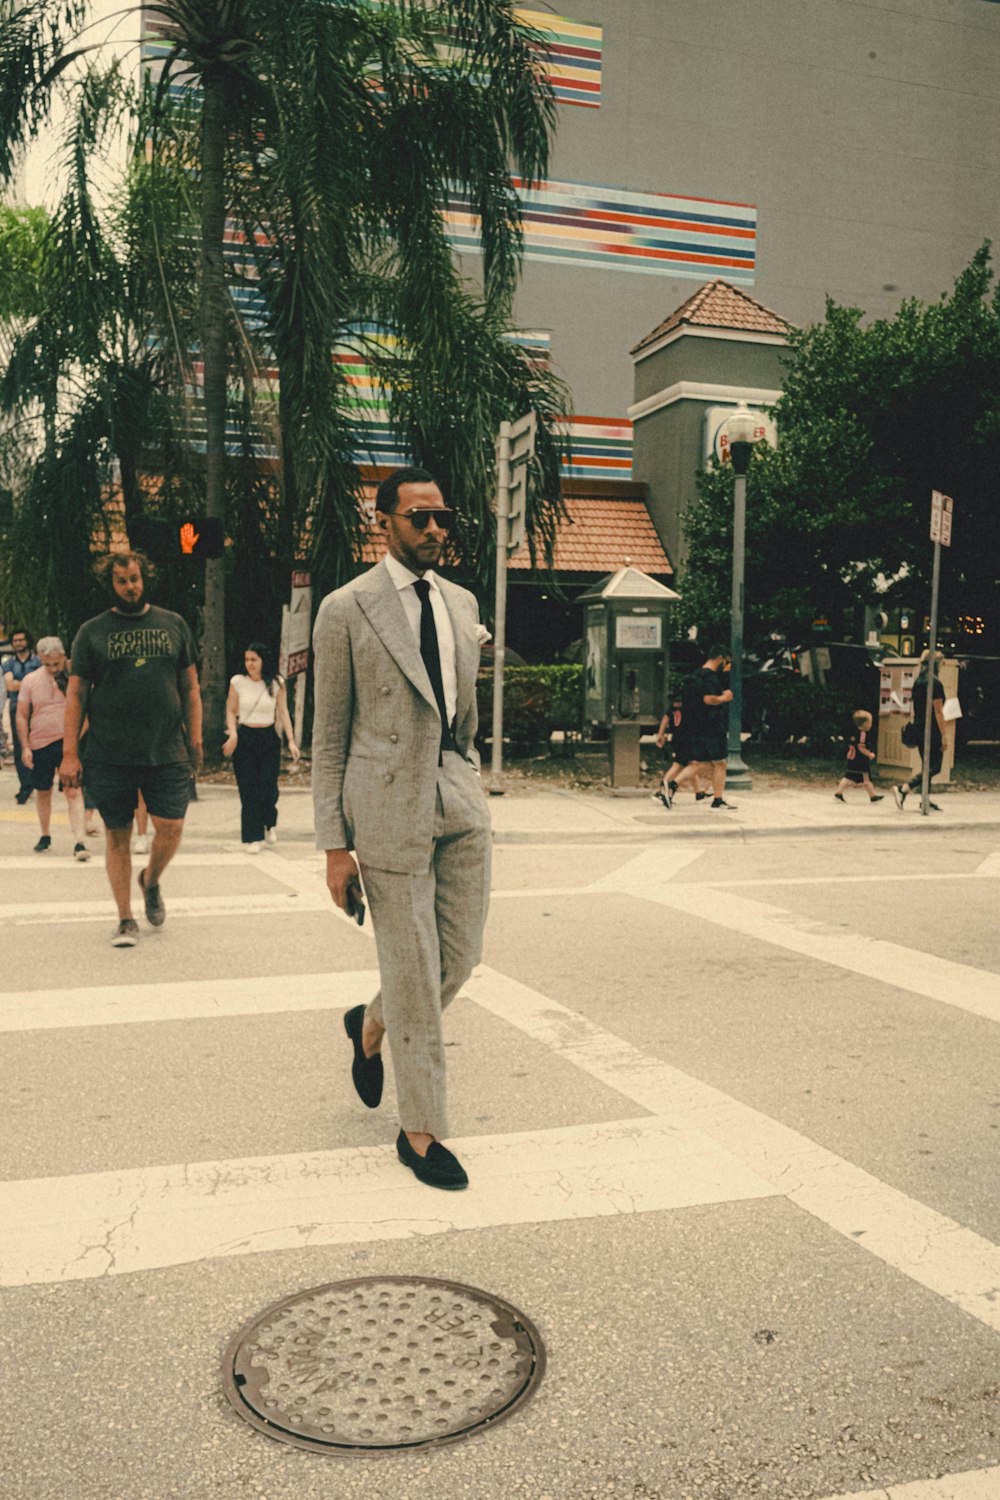 a man in a suit walking across a street